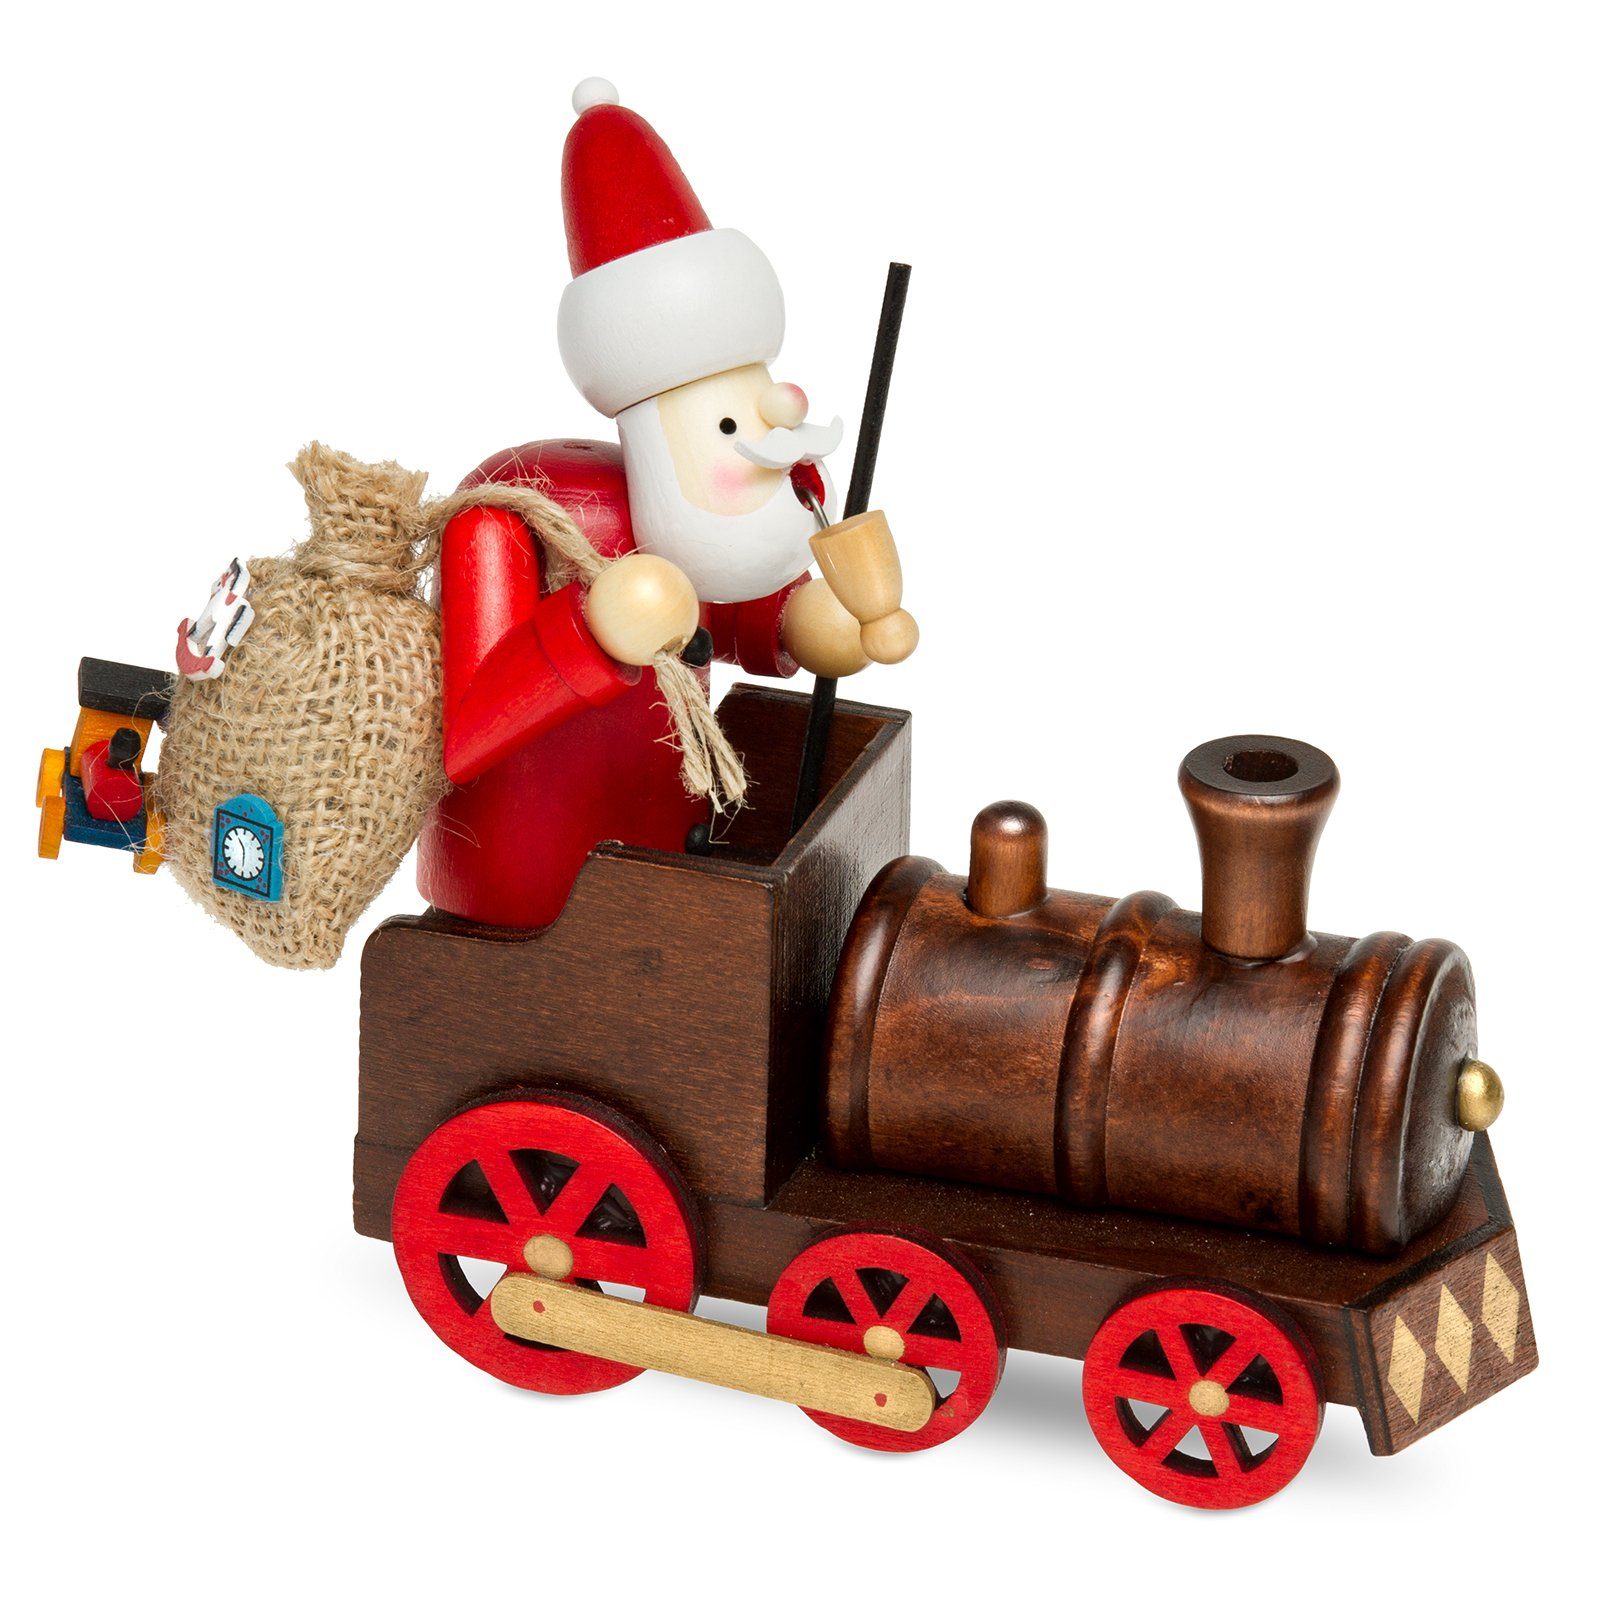 SIKORA Weihnachtsfigur Weihnachtsmann Holz Räuchermännchen RM-A01-LOK der in Lokomotive